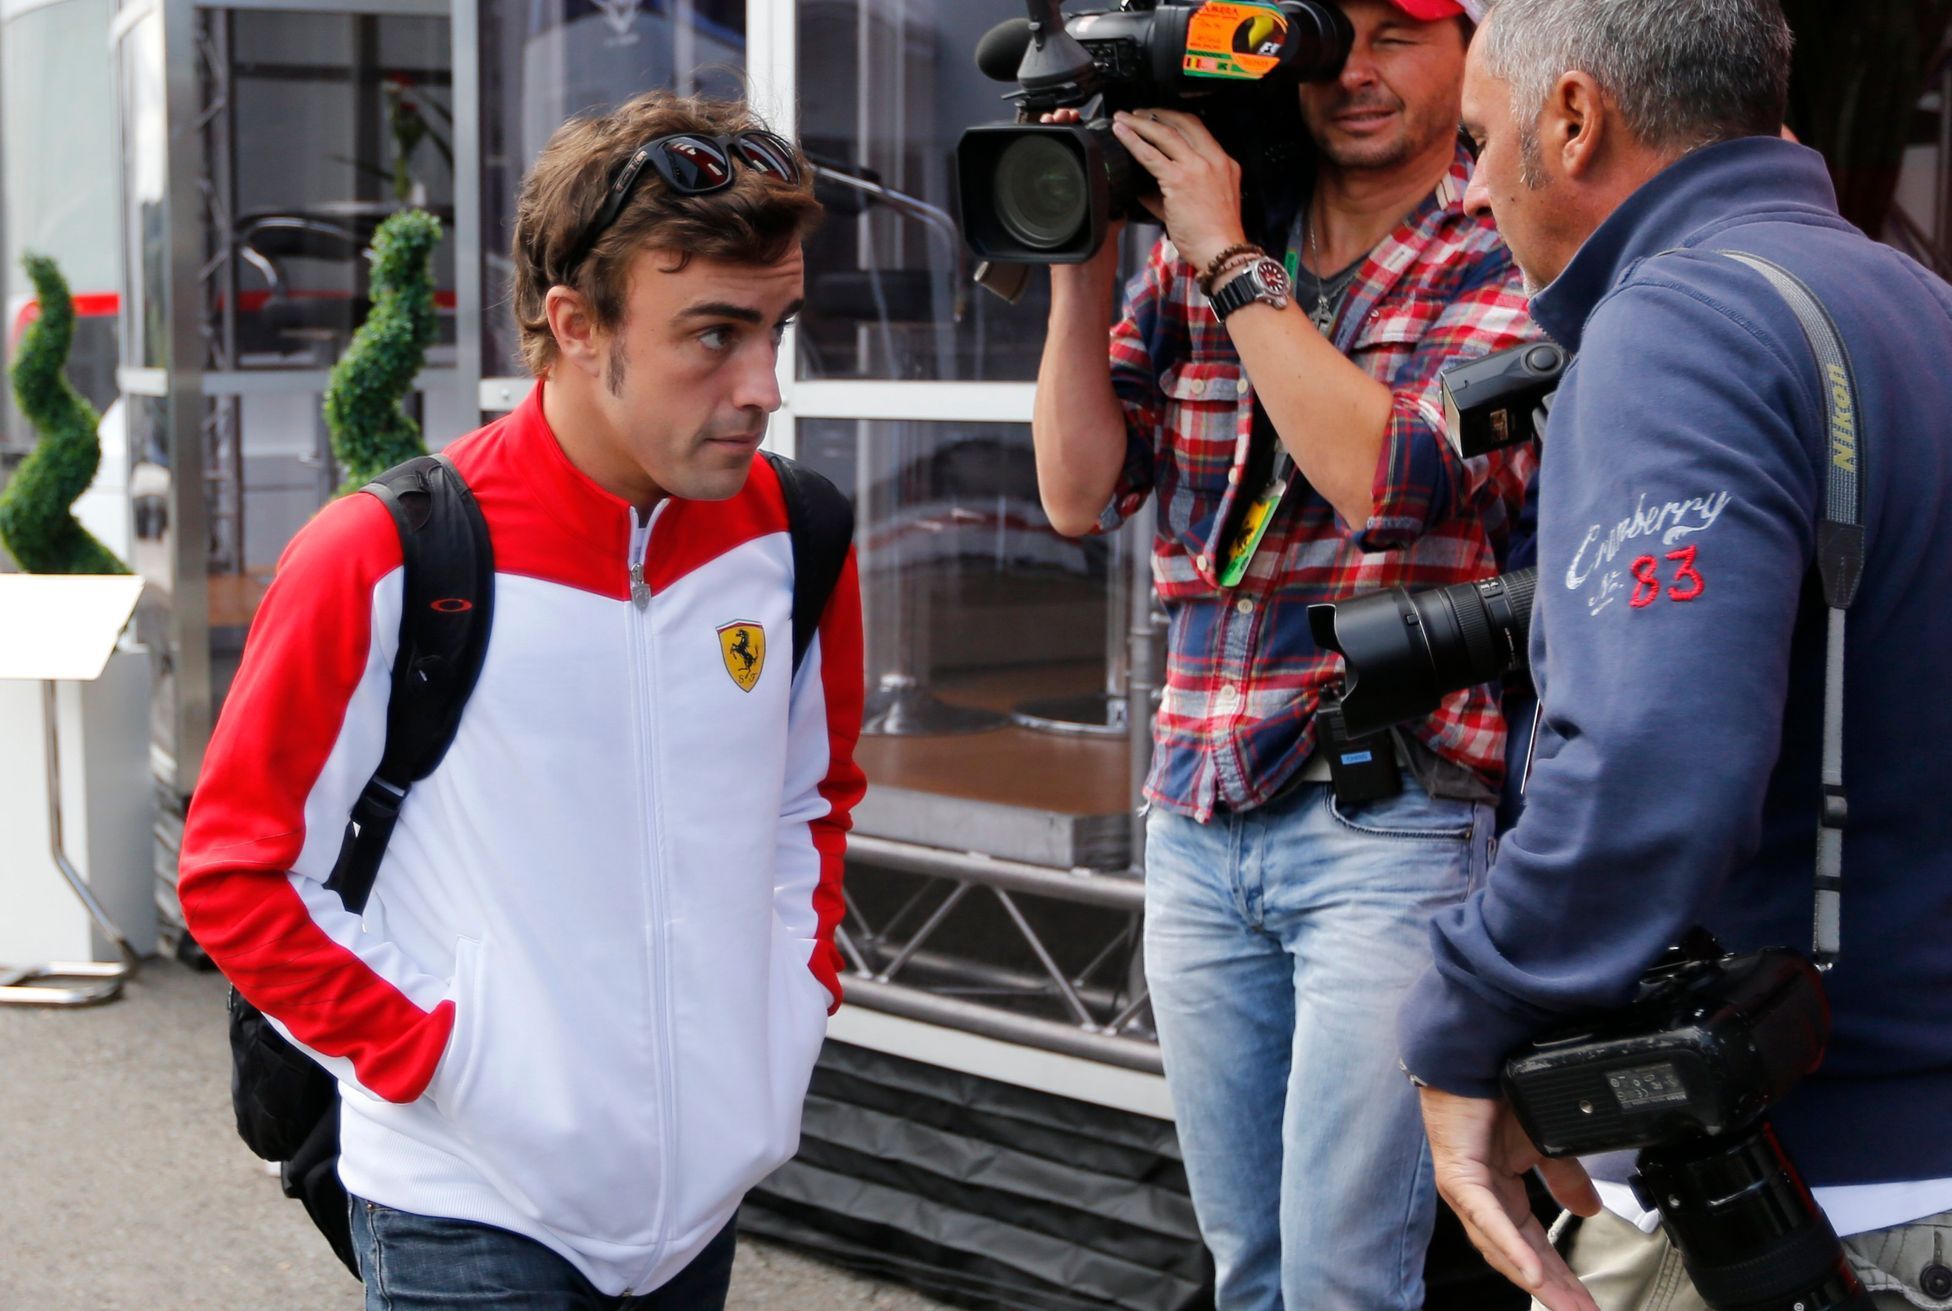 Fernando Alonso přijel do Spa